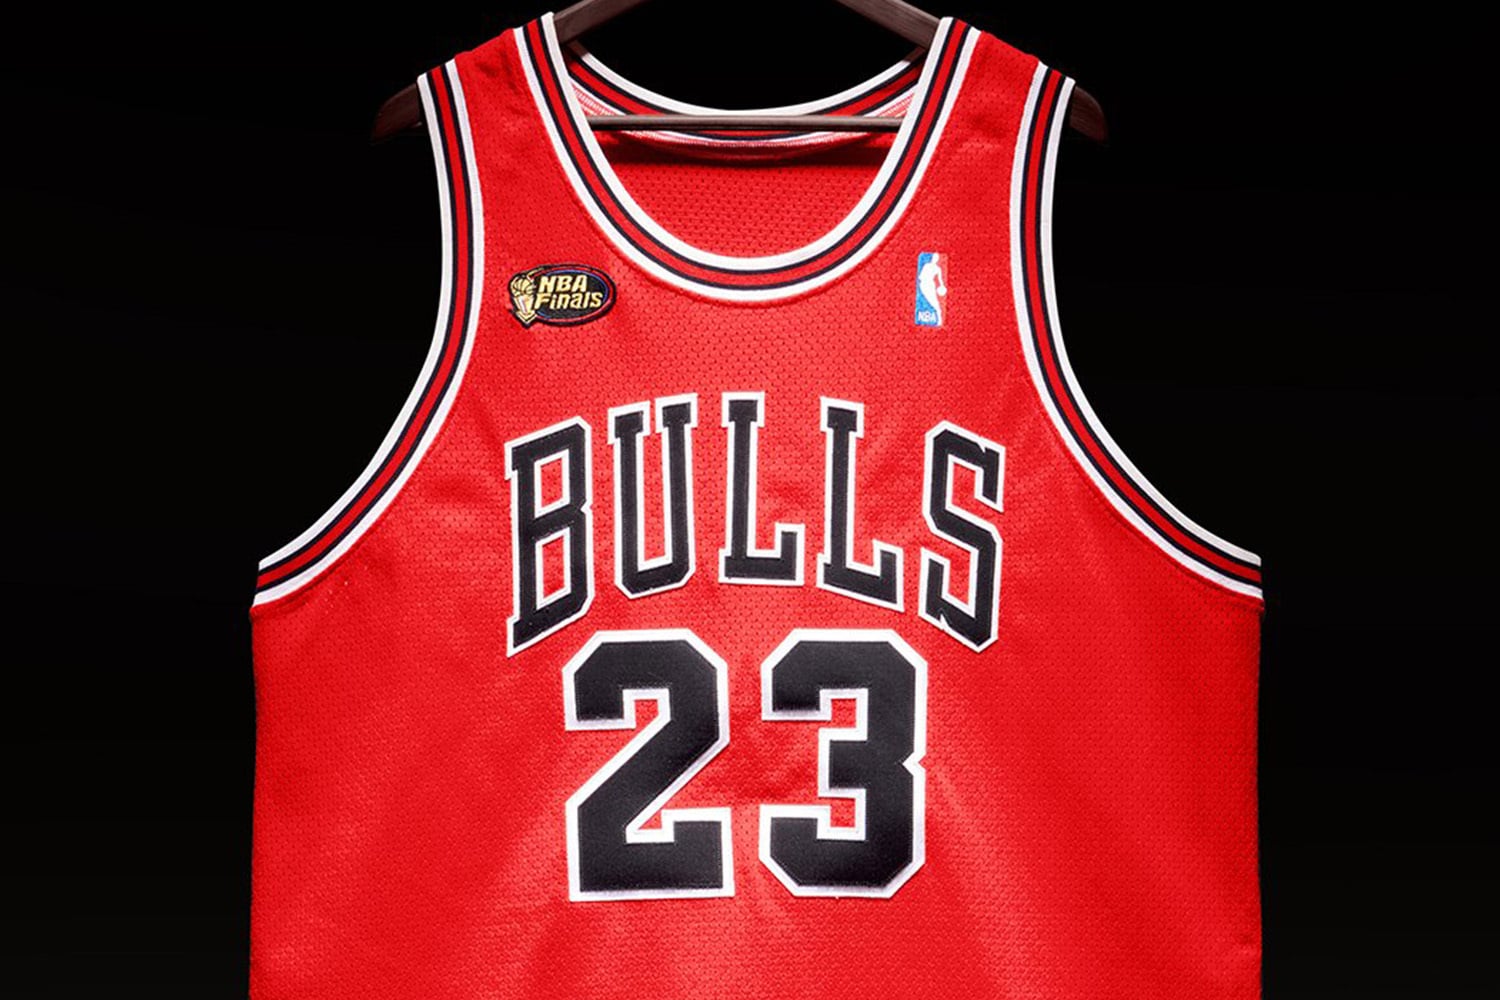 Michael Jordan '98 Finals Jersey Could Fetch $5M at Auction